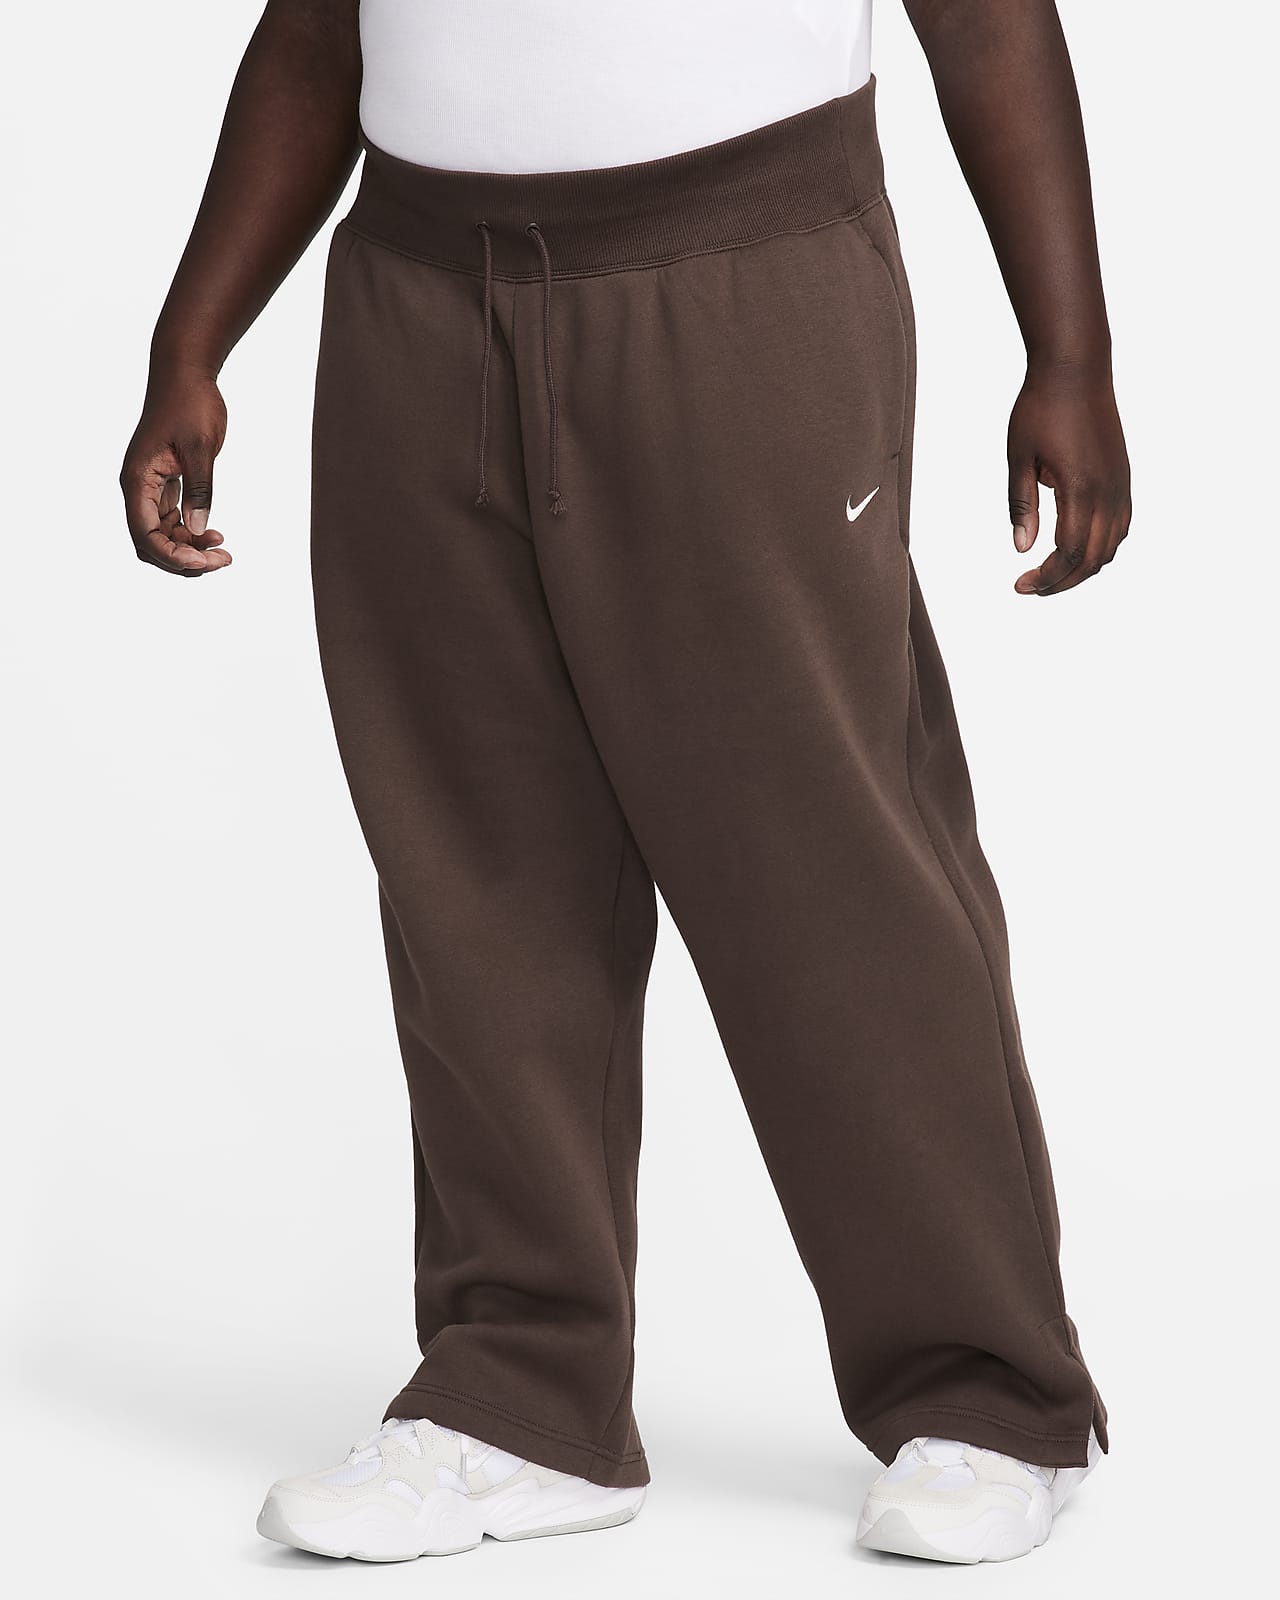 Pants de entrenamiento de piernas anchas y tiro alto para mujer Nike Sportswear Phoenix Fleece (talla grande)